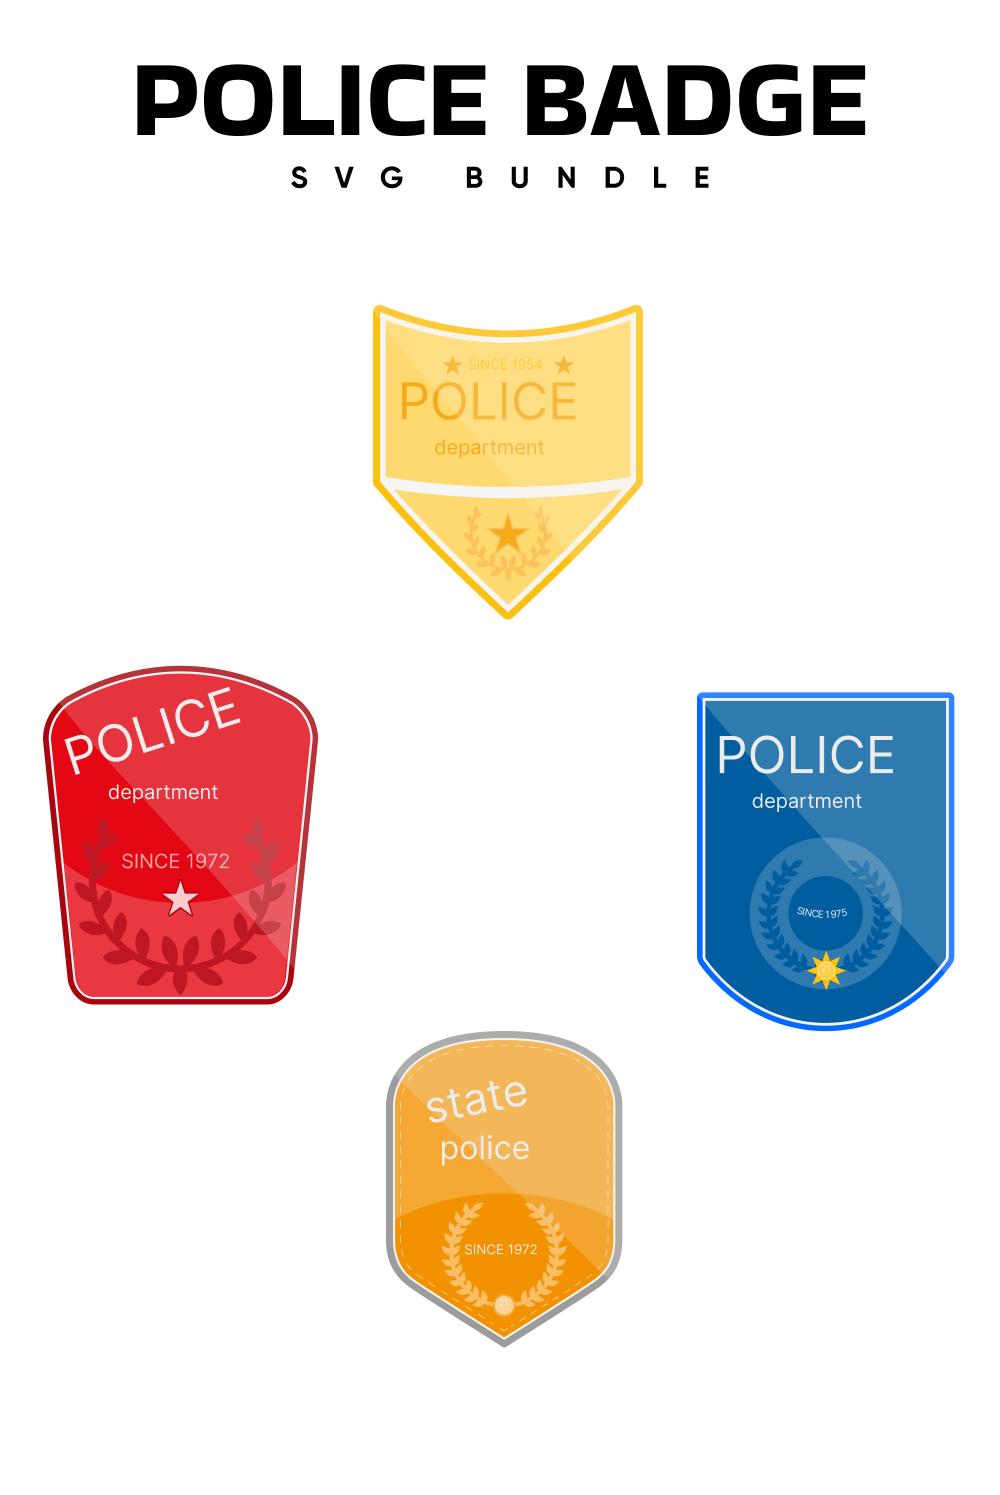 Police Badge Svg - Pinterest.